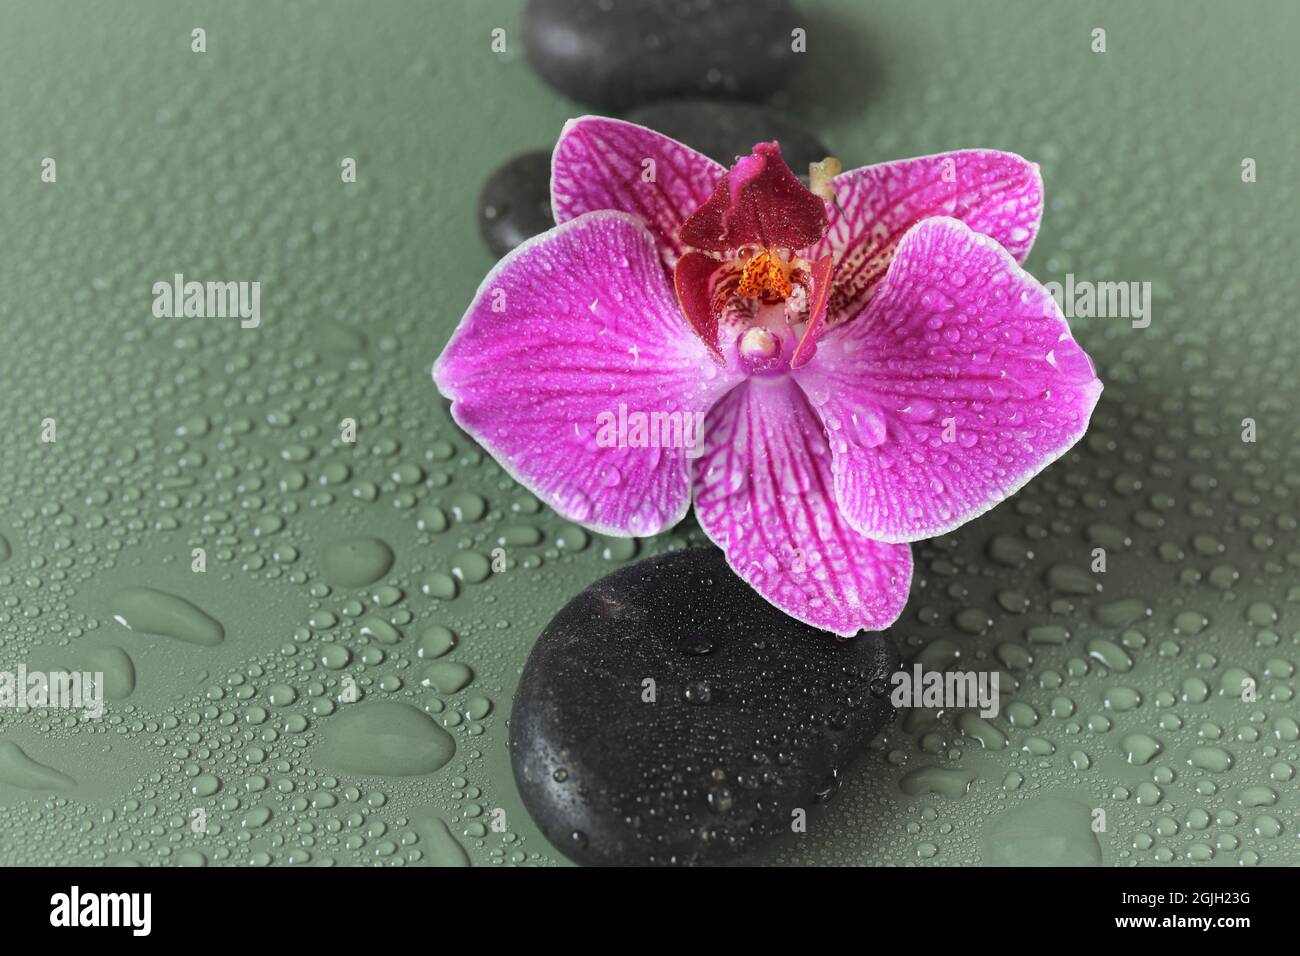 Piedras de spa y piedras de flores de orquídeas. Zen. Masaje Stone.Beauty y harmony. Piedras y flores de orquídeas rosadas en gotas de agua Foto de stock